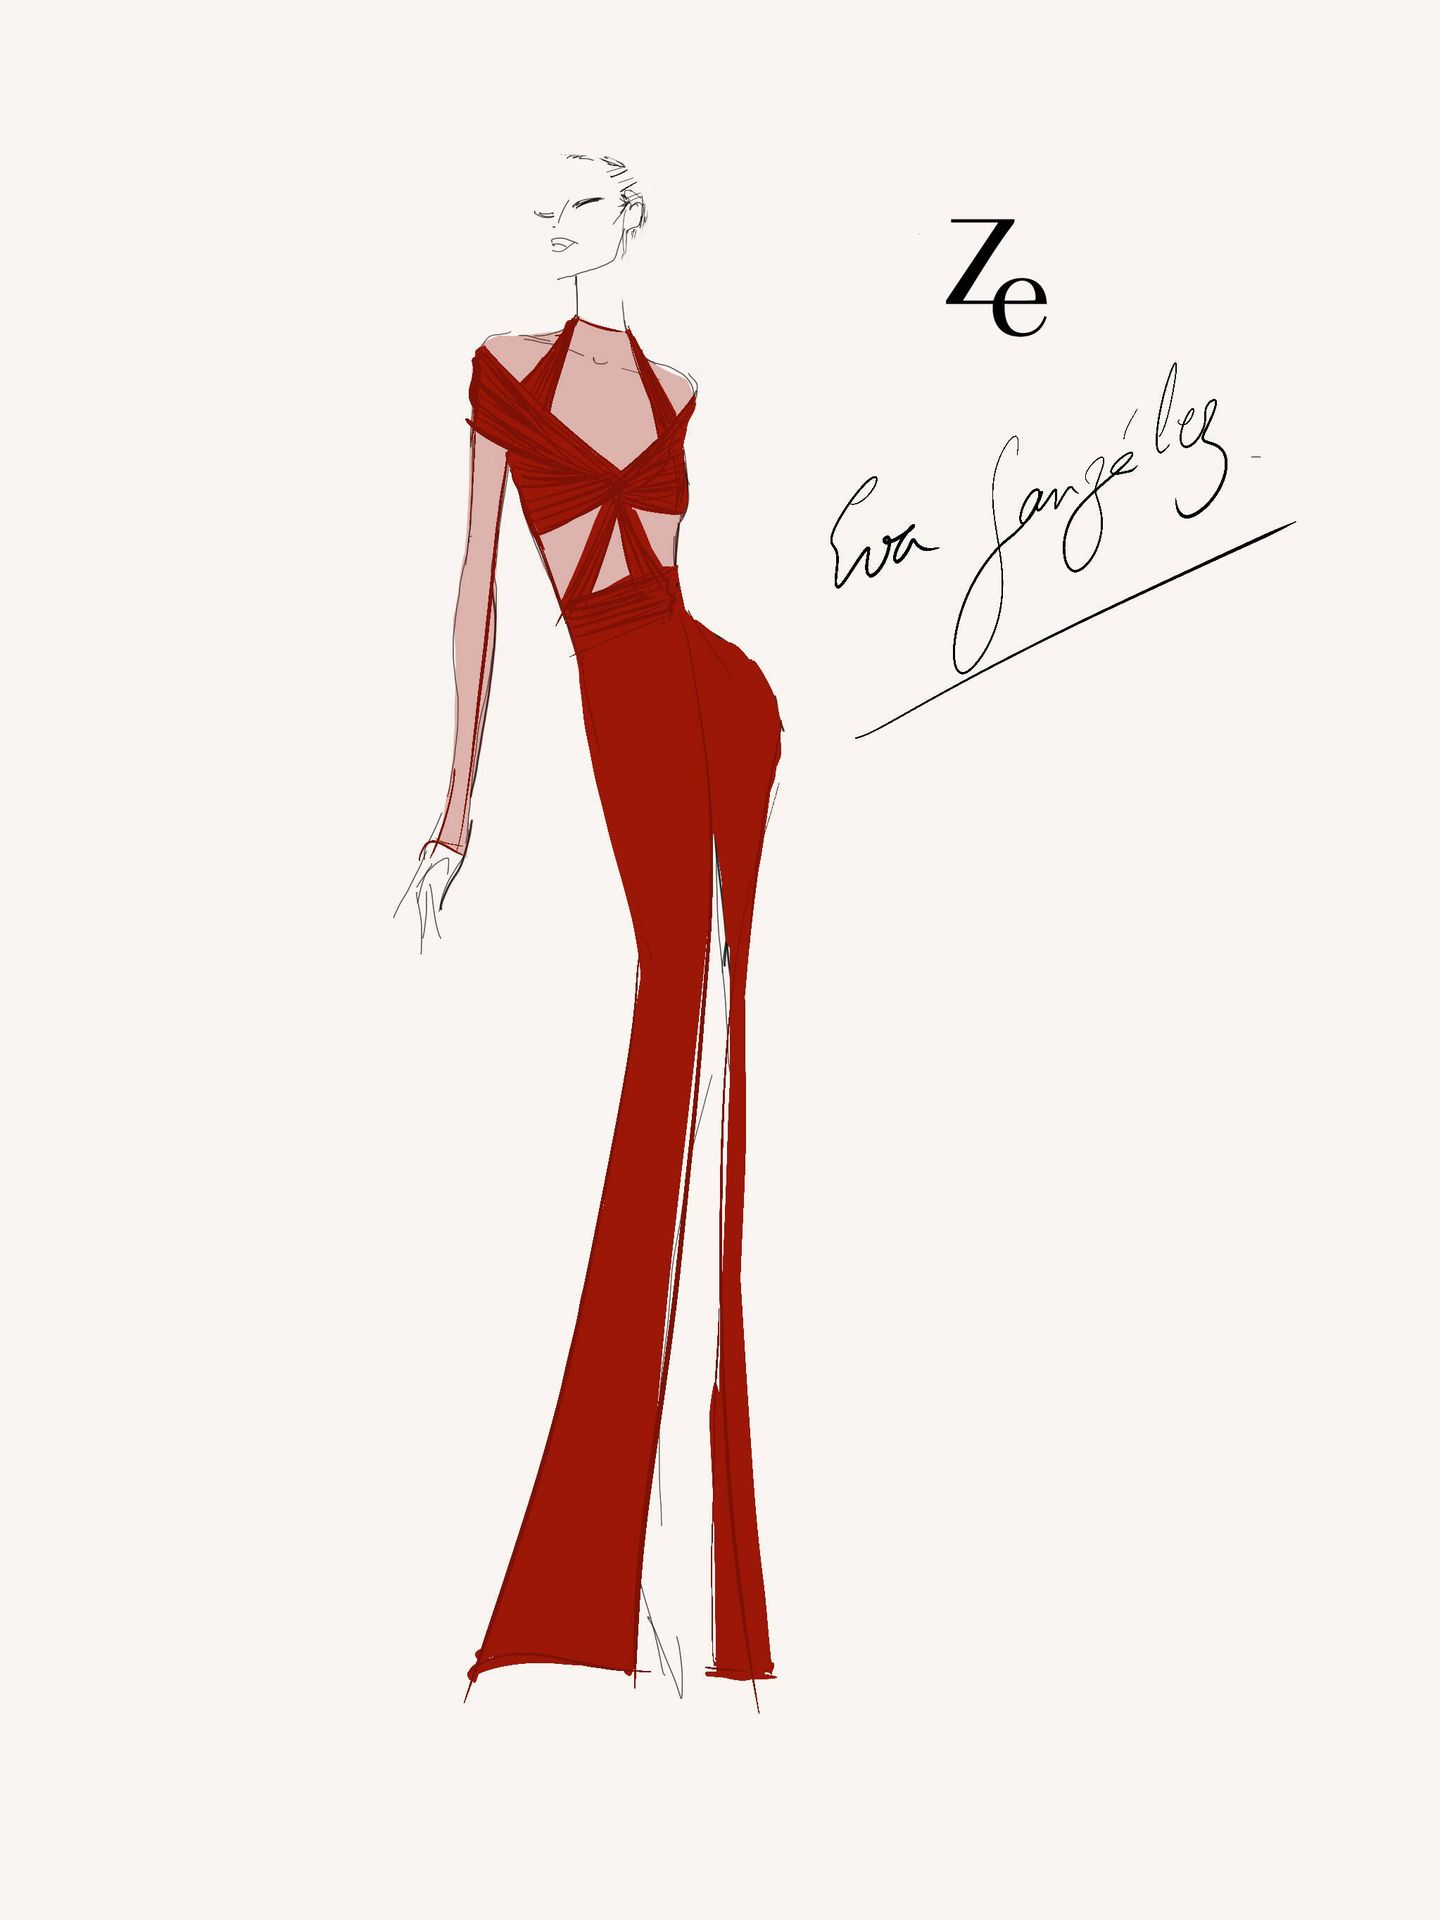 El boceto del vestido creado por Ze García. (Cortesía)